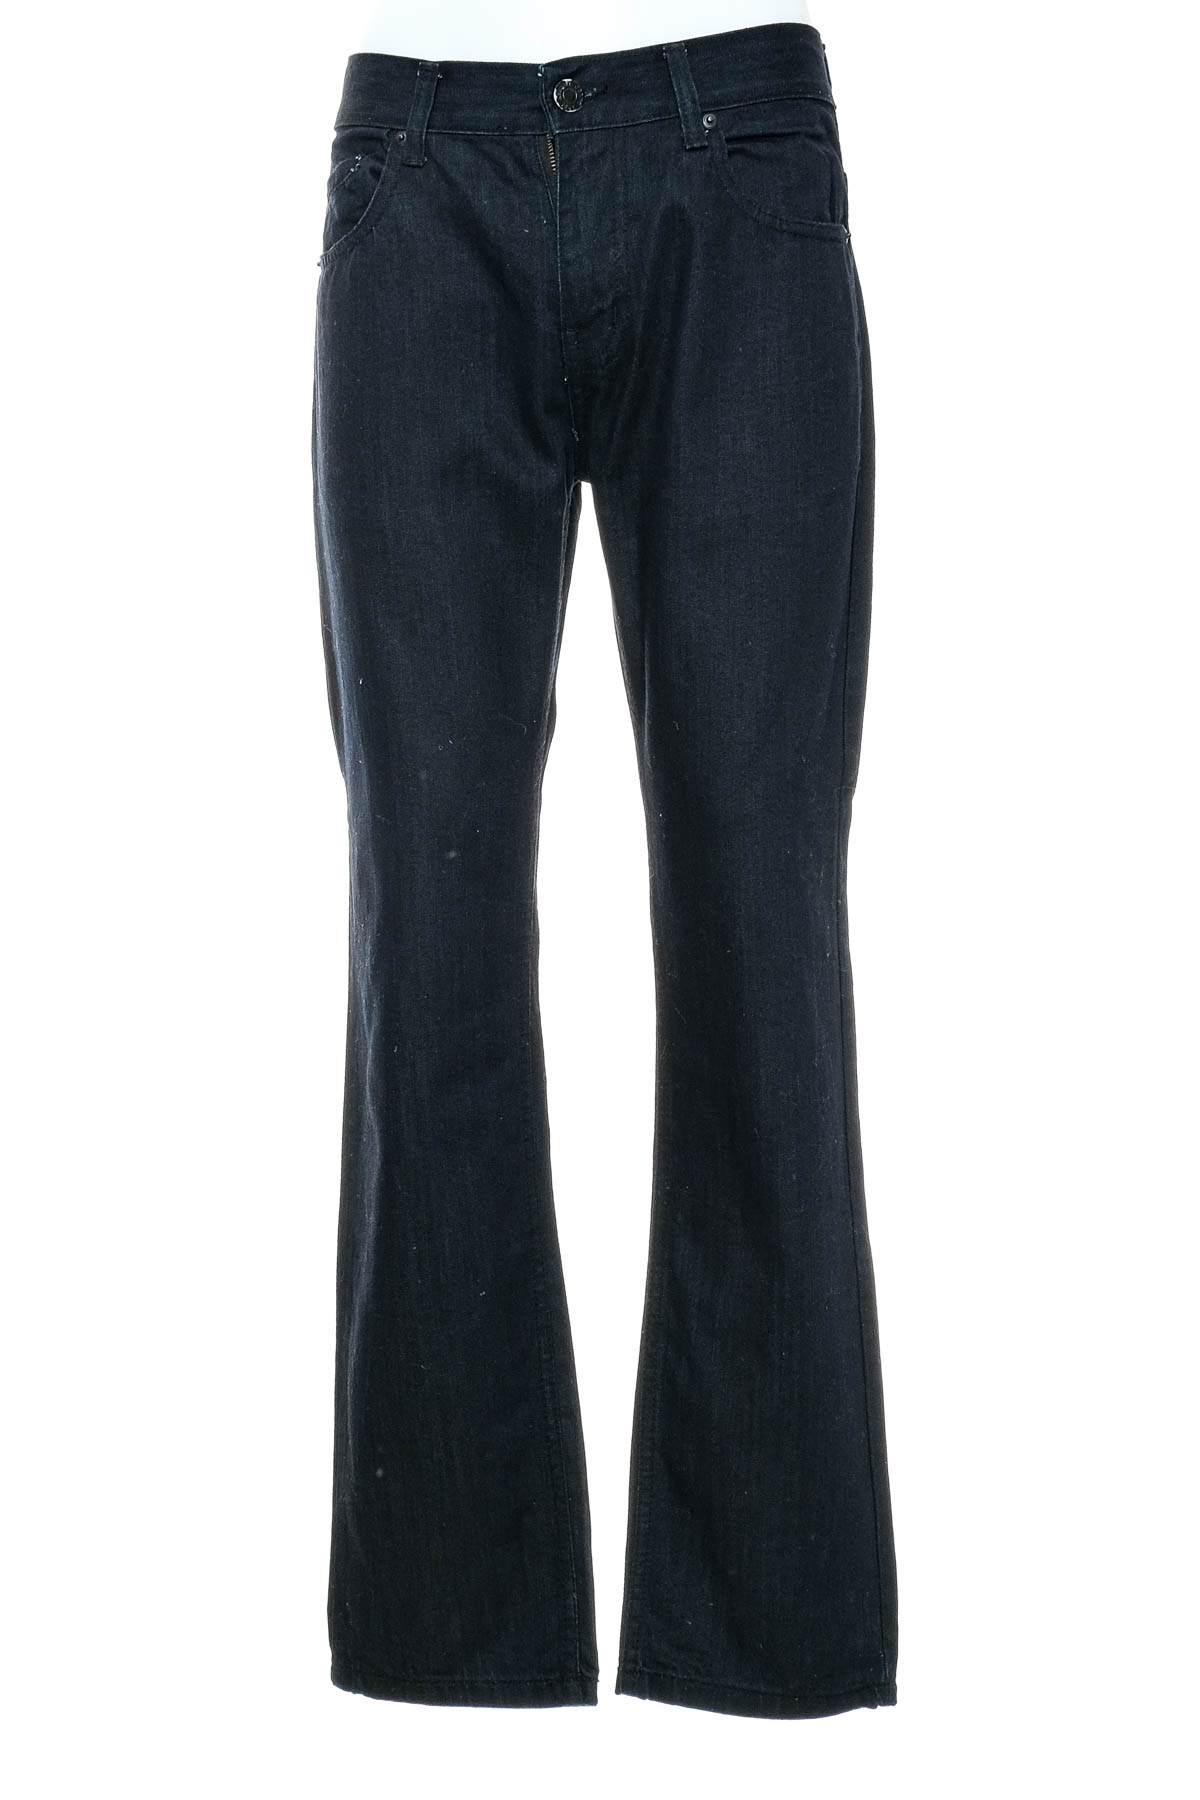 Ανδρικό τζιν - Armani Jeans - 0